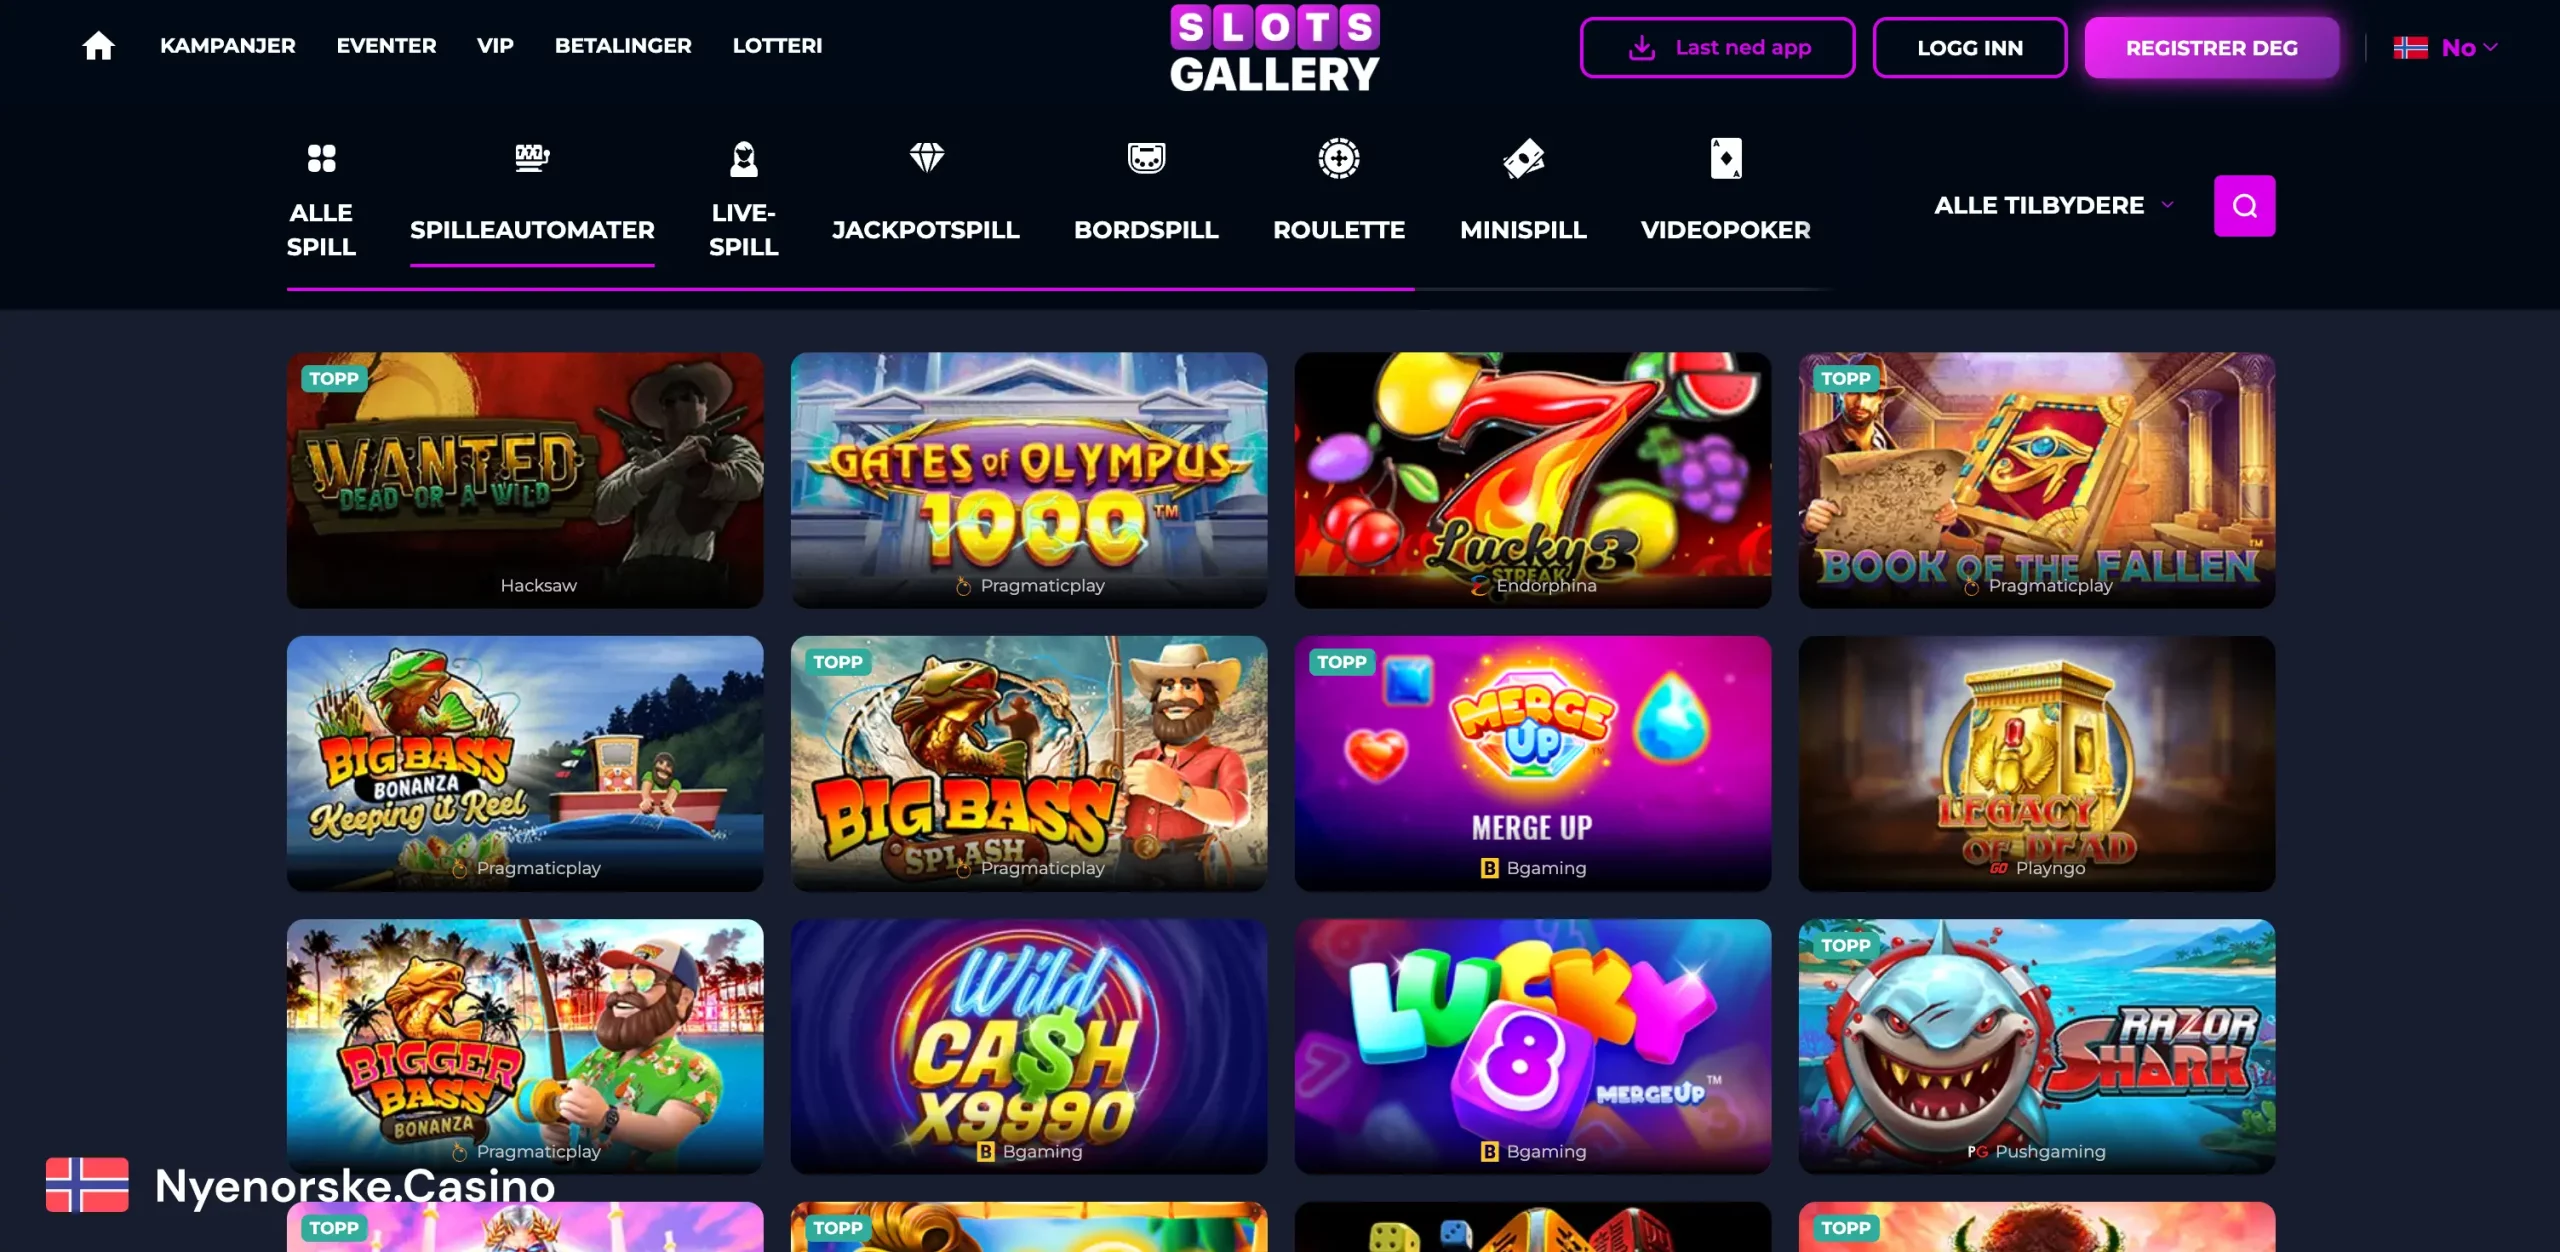 Slots Gallery Casino spillutvalg